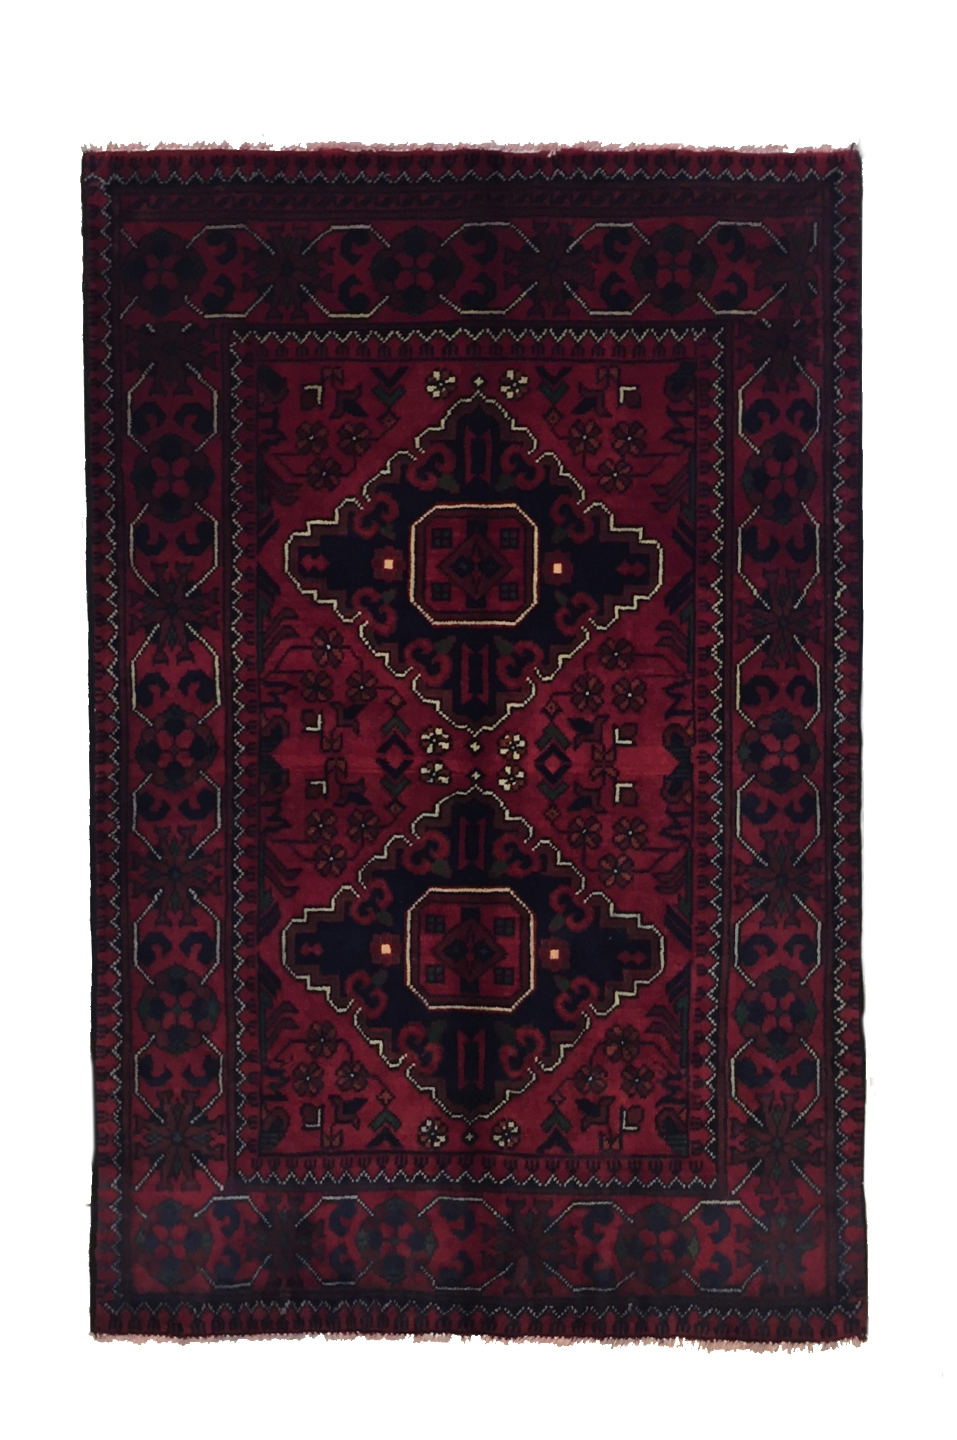 Kunduz Bicolor Carpet 114 X 80 cm - Alfombras de Estambul -  Kunduz - Alfombras de Estambul